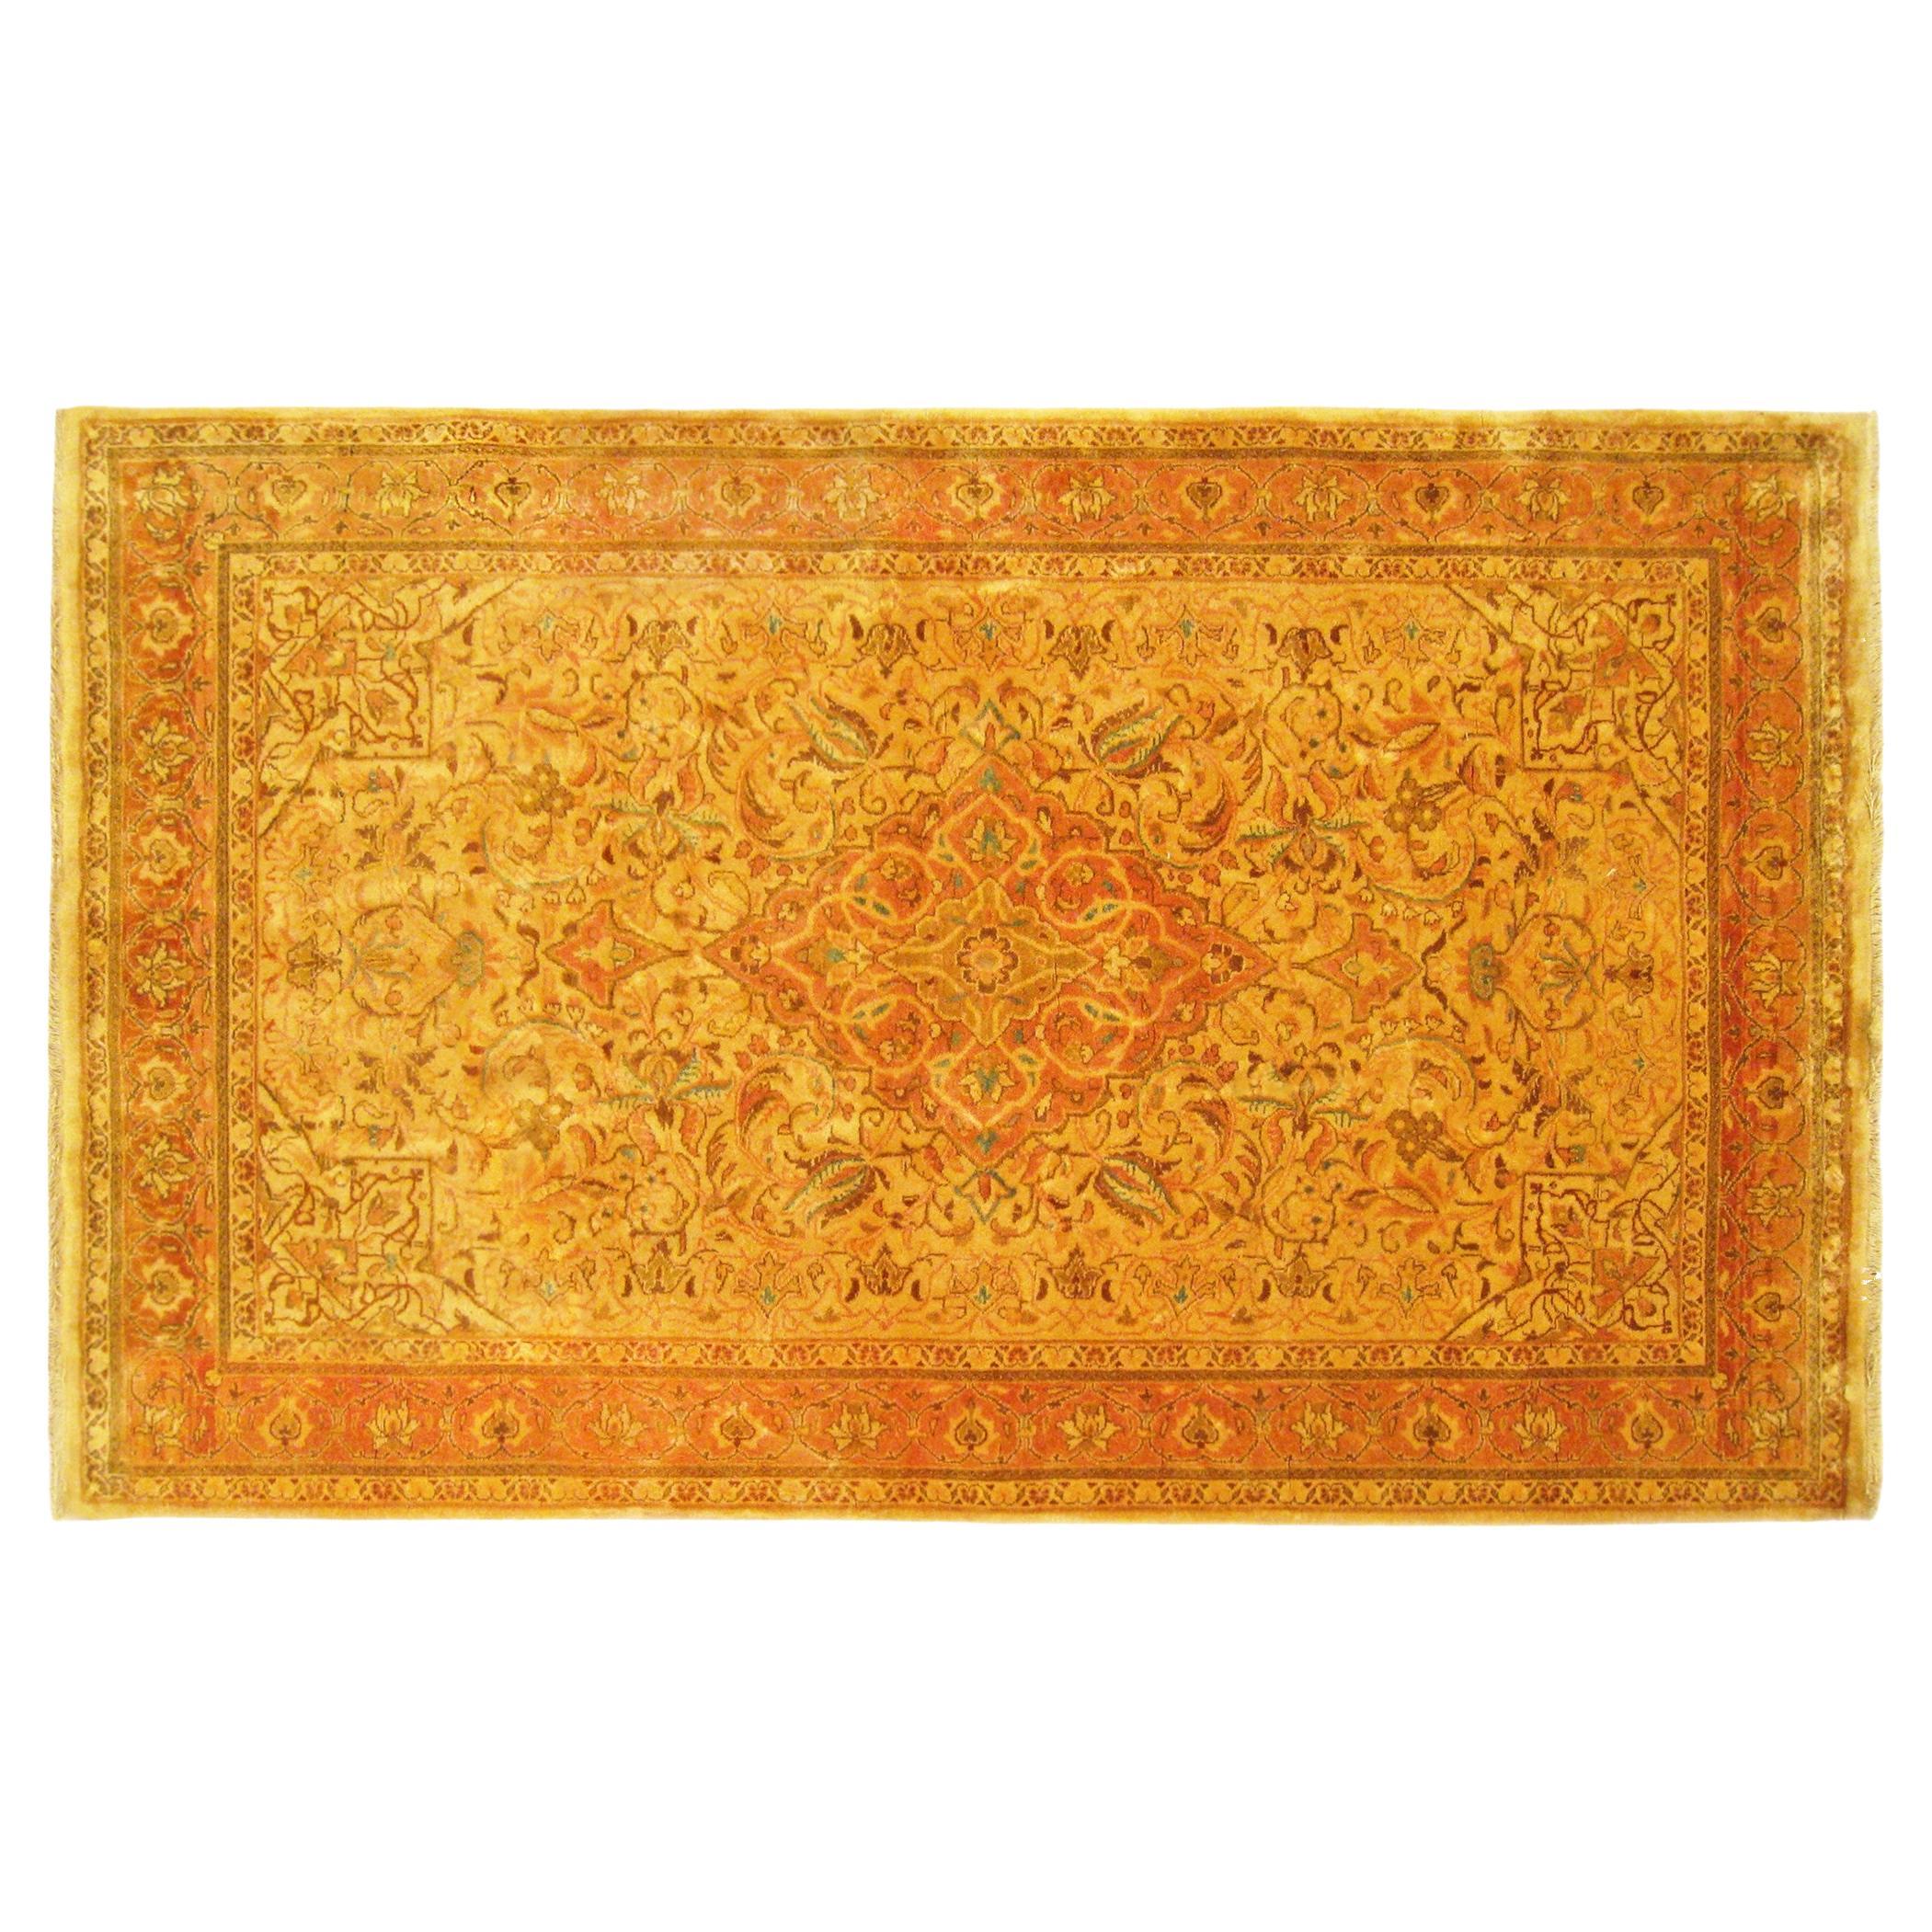 Tapis persan Sarouk oriental vintage, de petite taille, avec médaillon central